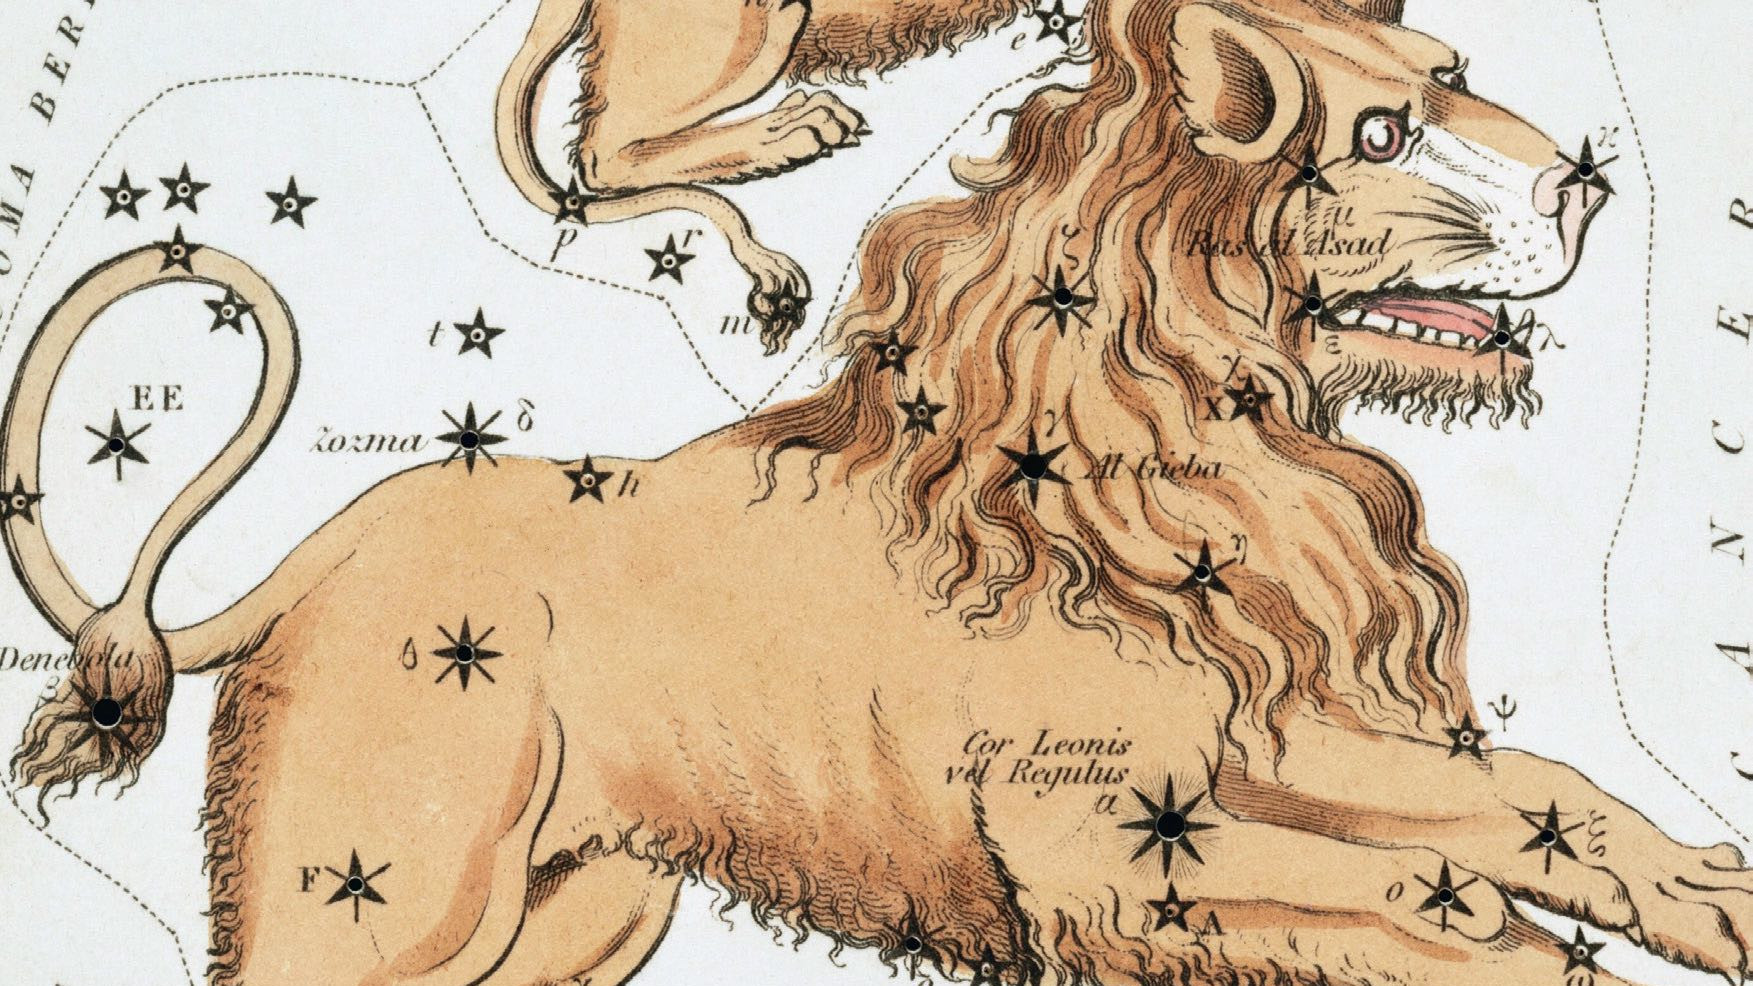 Enquanto hoje é possível reconhecer a distinta forma de um ferro de engomar na constelação, há milhares de anos os observadores celestes imaginavam ali um leão agachado, com a estrela brilhante Regulus a marcar o seu coração. 